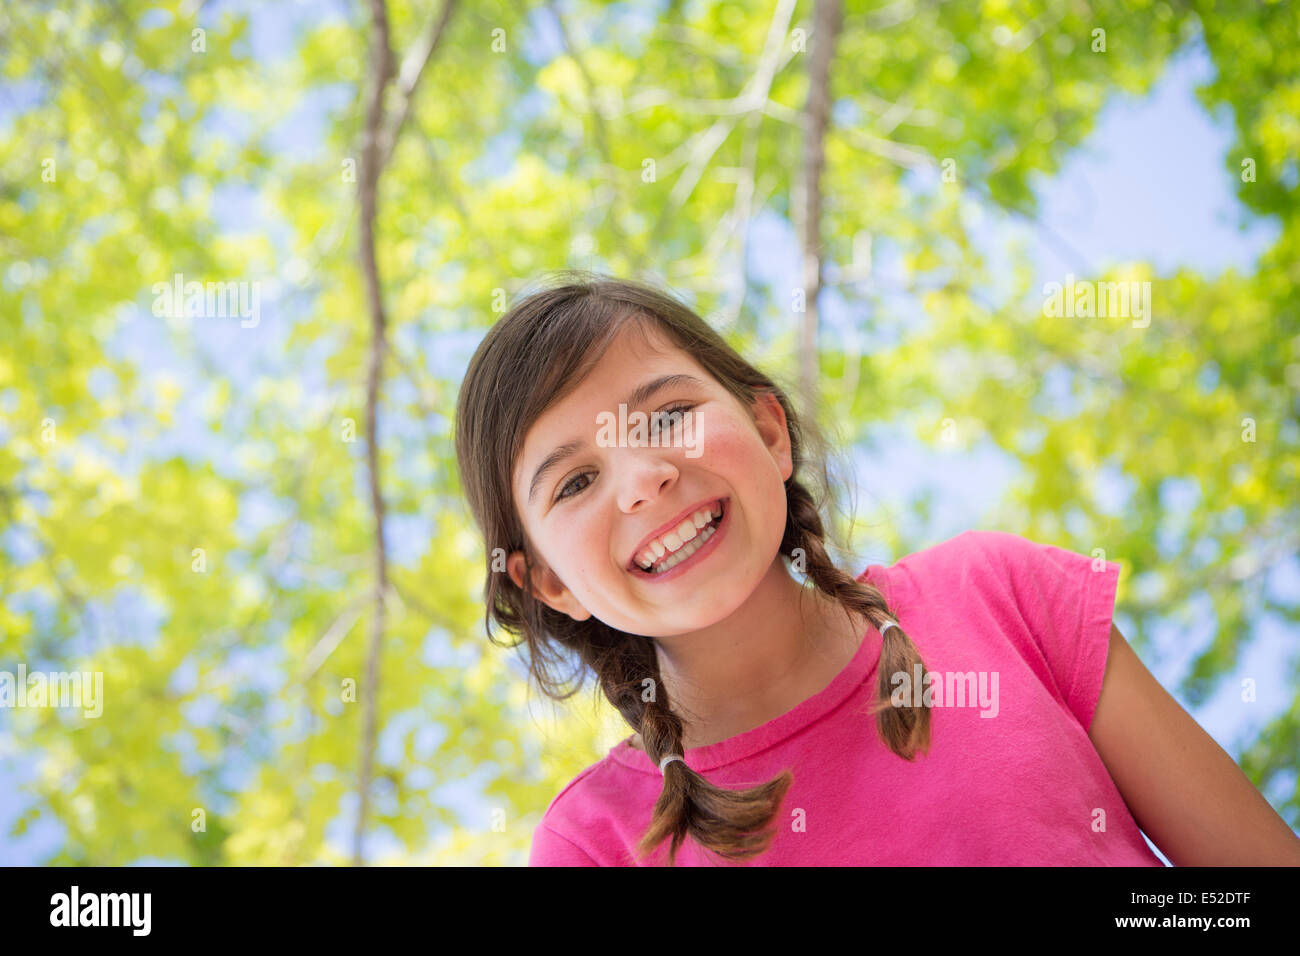 Une jeune fille aux tresses, vêtu d'un haut rose sous un dais d'arbres. Banque D'Images